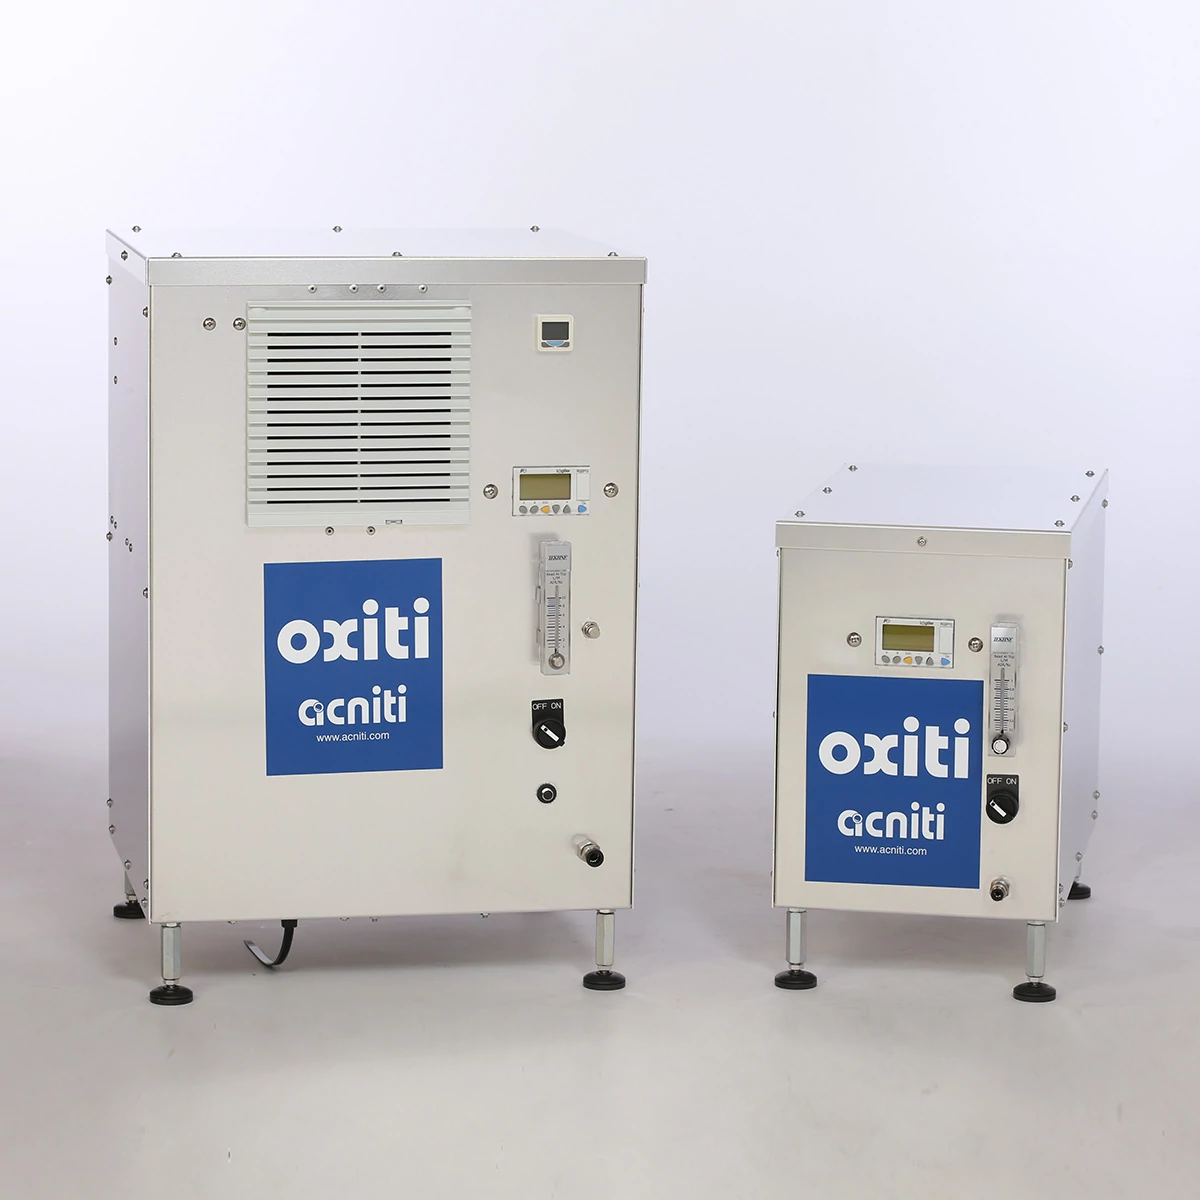 concentrador de oxígeno industrial oxiti